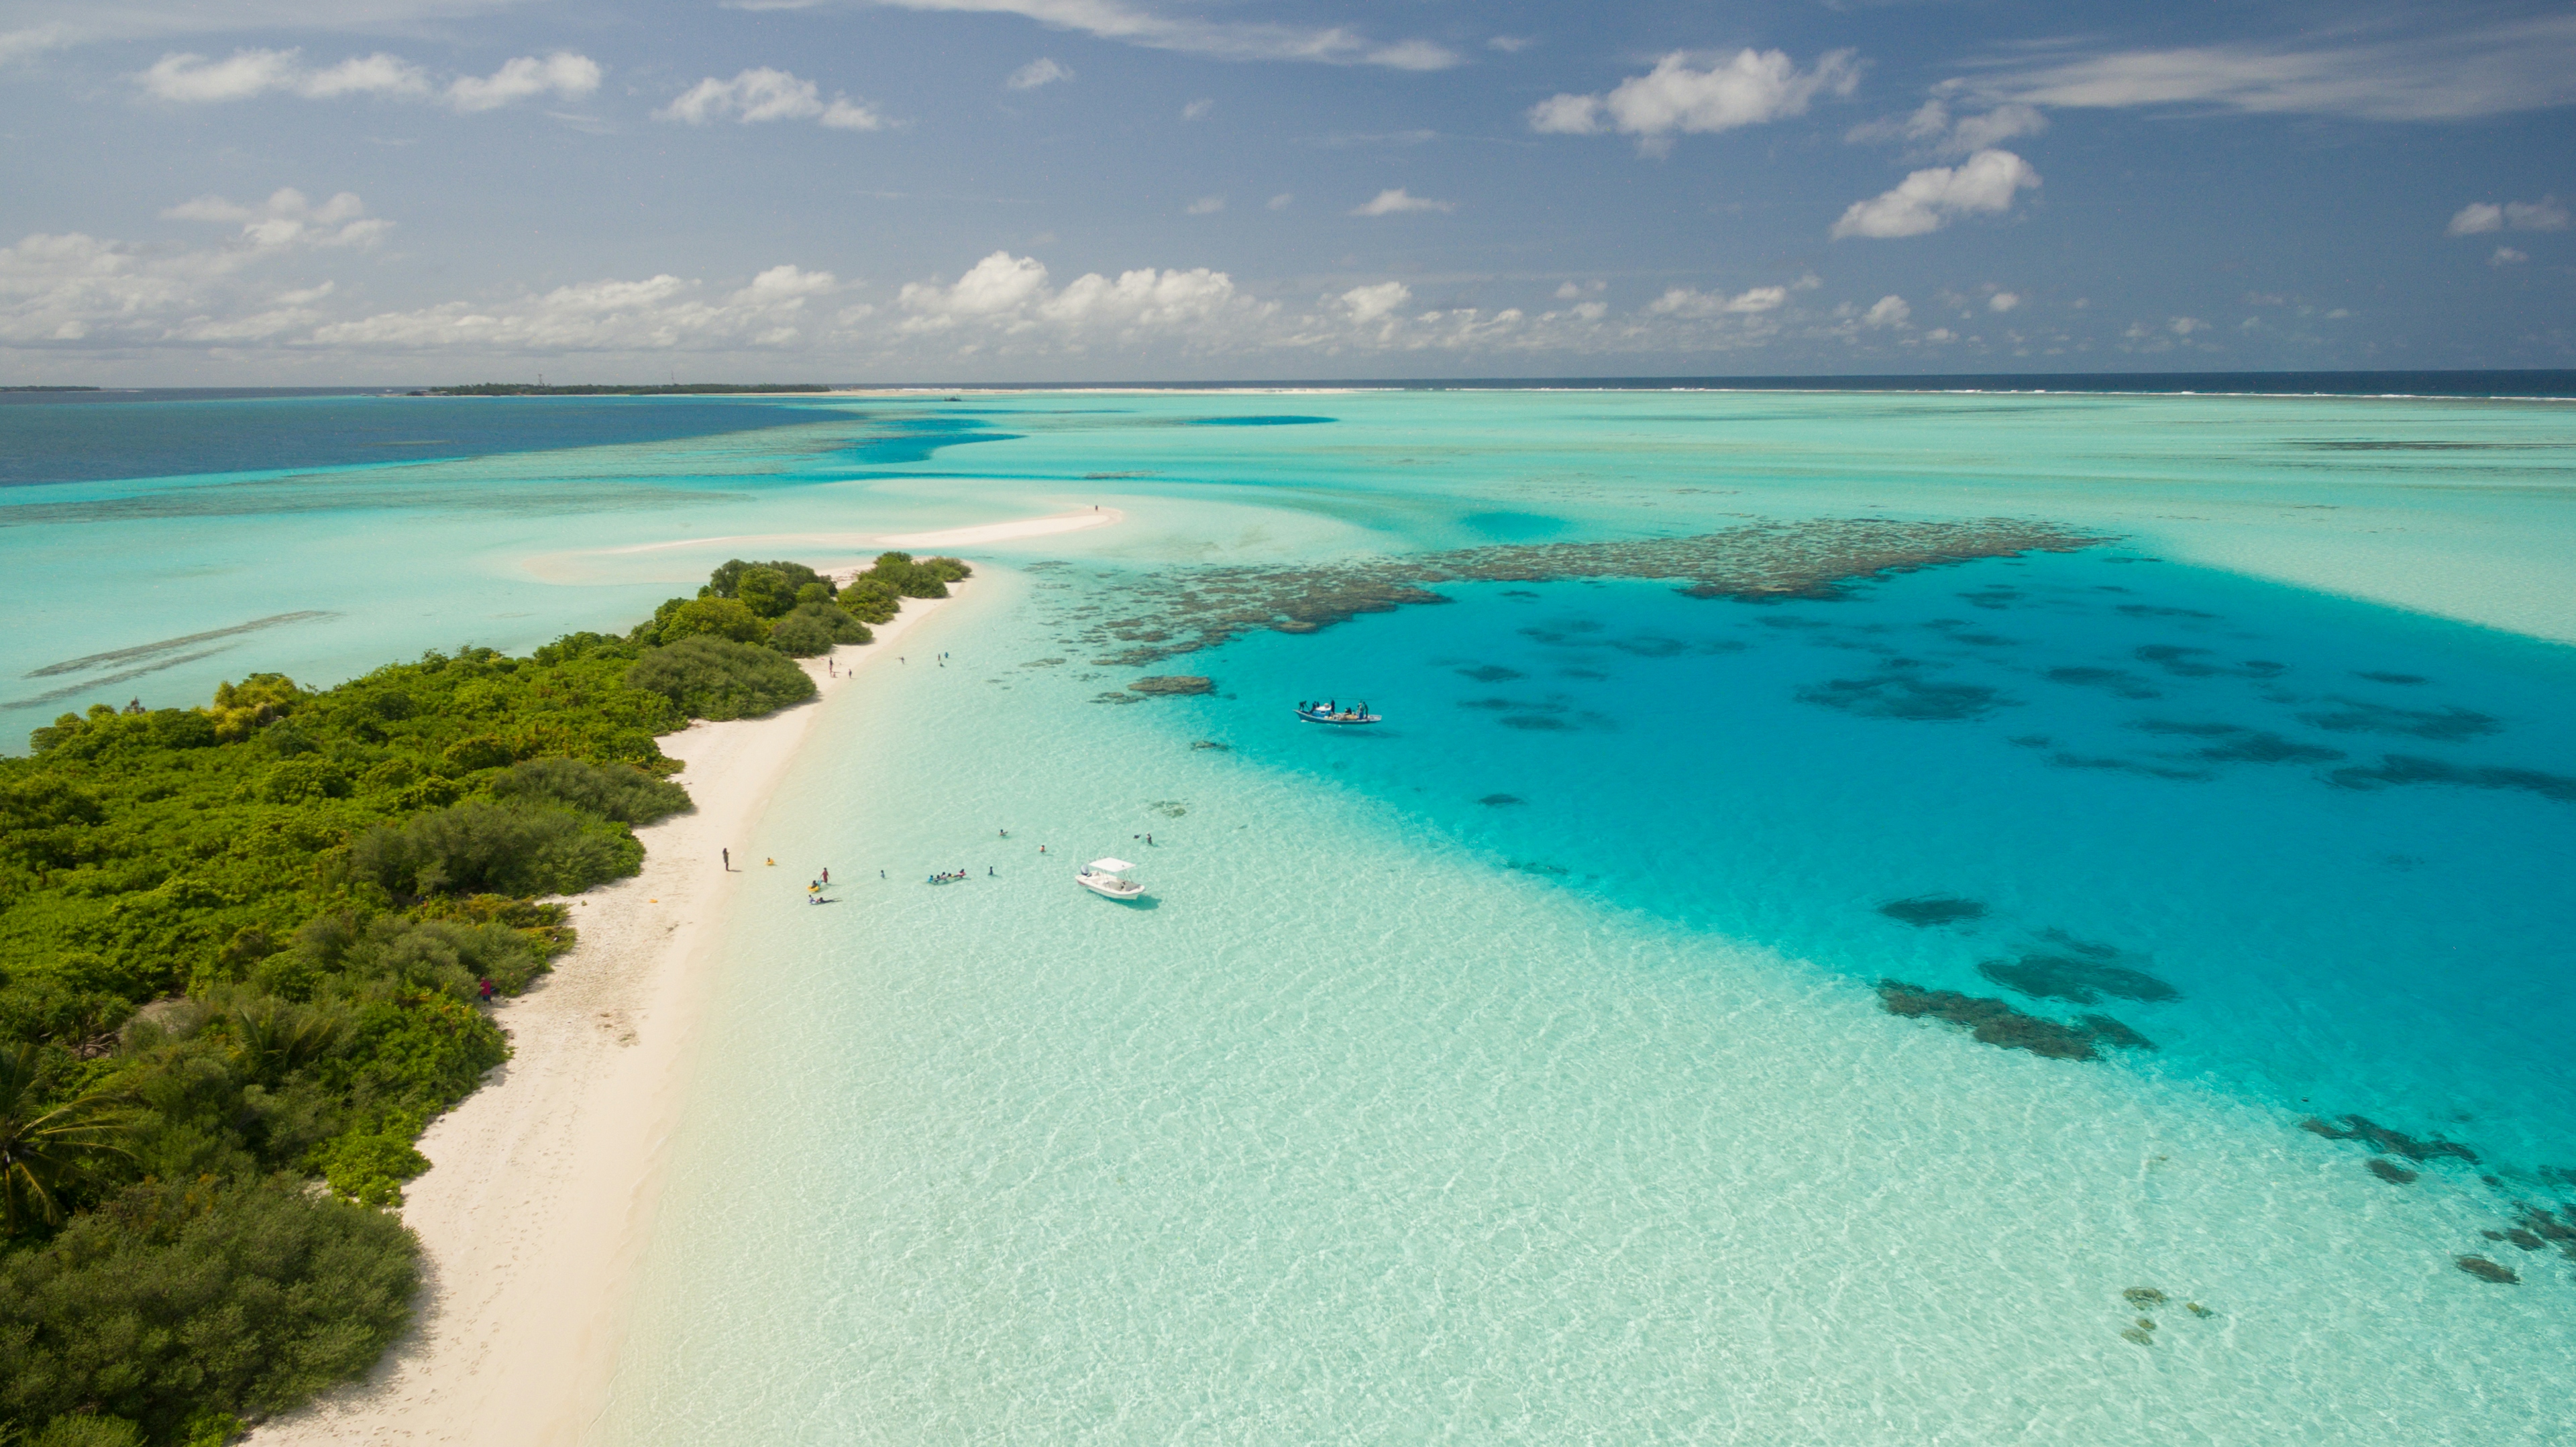 il panorama visto dall'alto di una spiaggia dei caraibi, ecco le offerte di utravel per vacanze ai caraibi